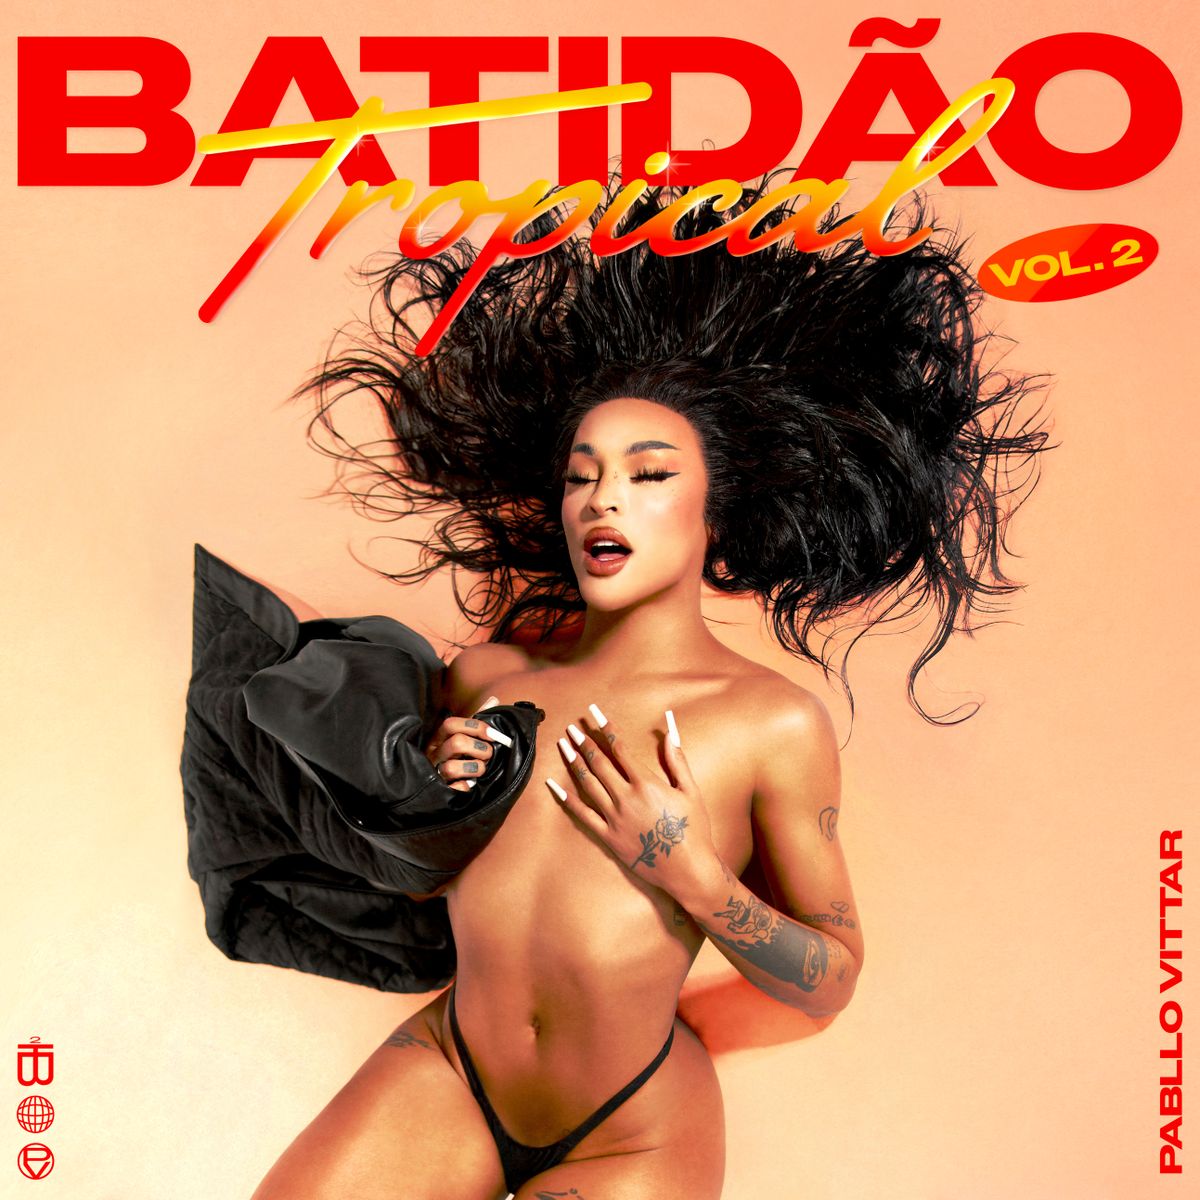  Pabllo Vittar lança Batidão Tropical Vol. 2 com versões de forró eletrônico e do pop internacional dos anos 90